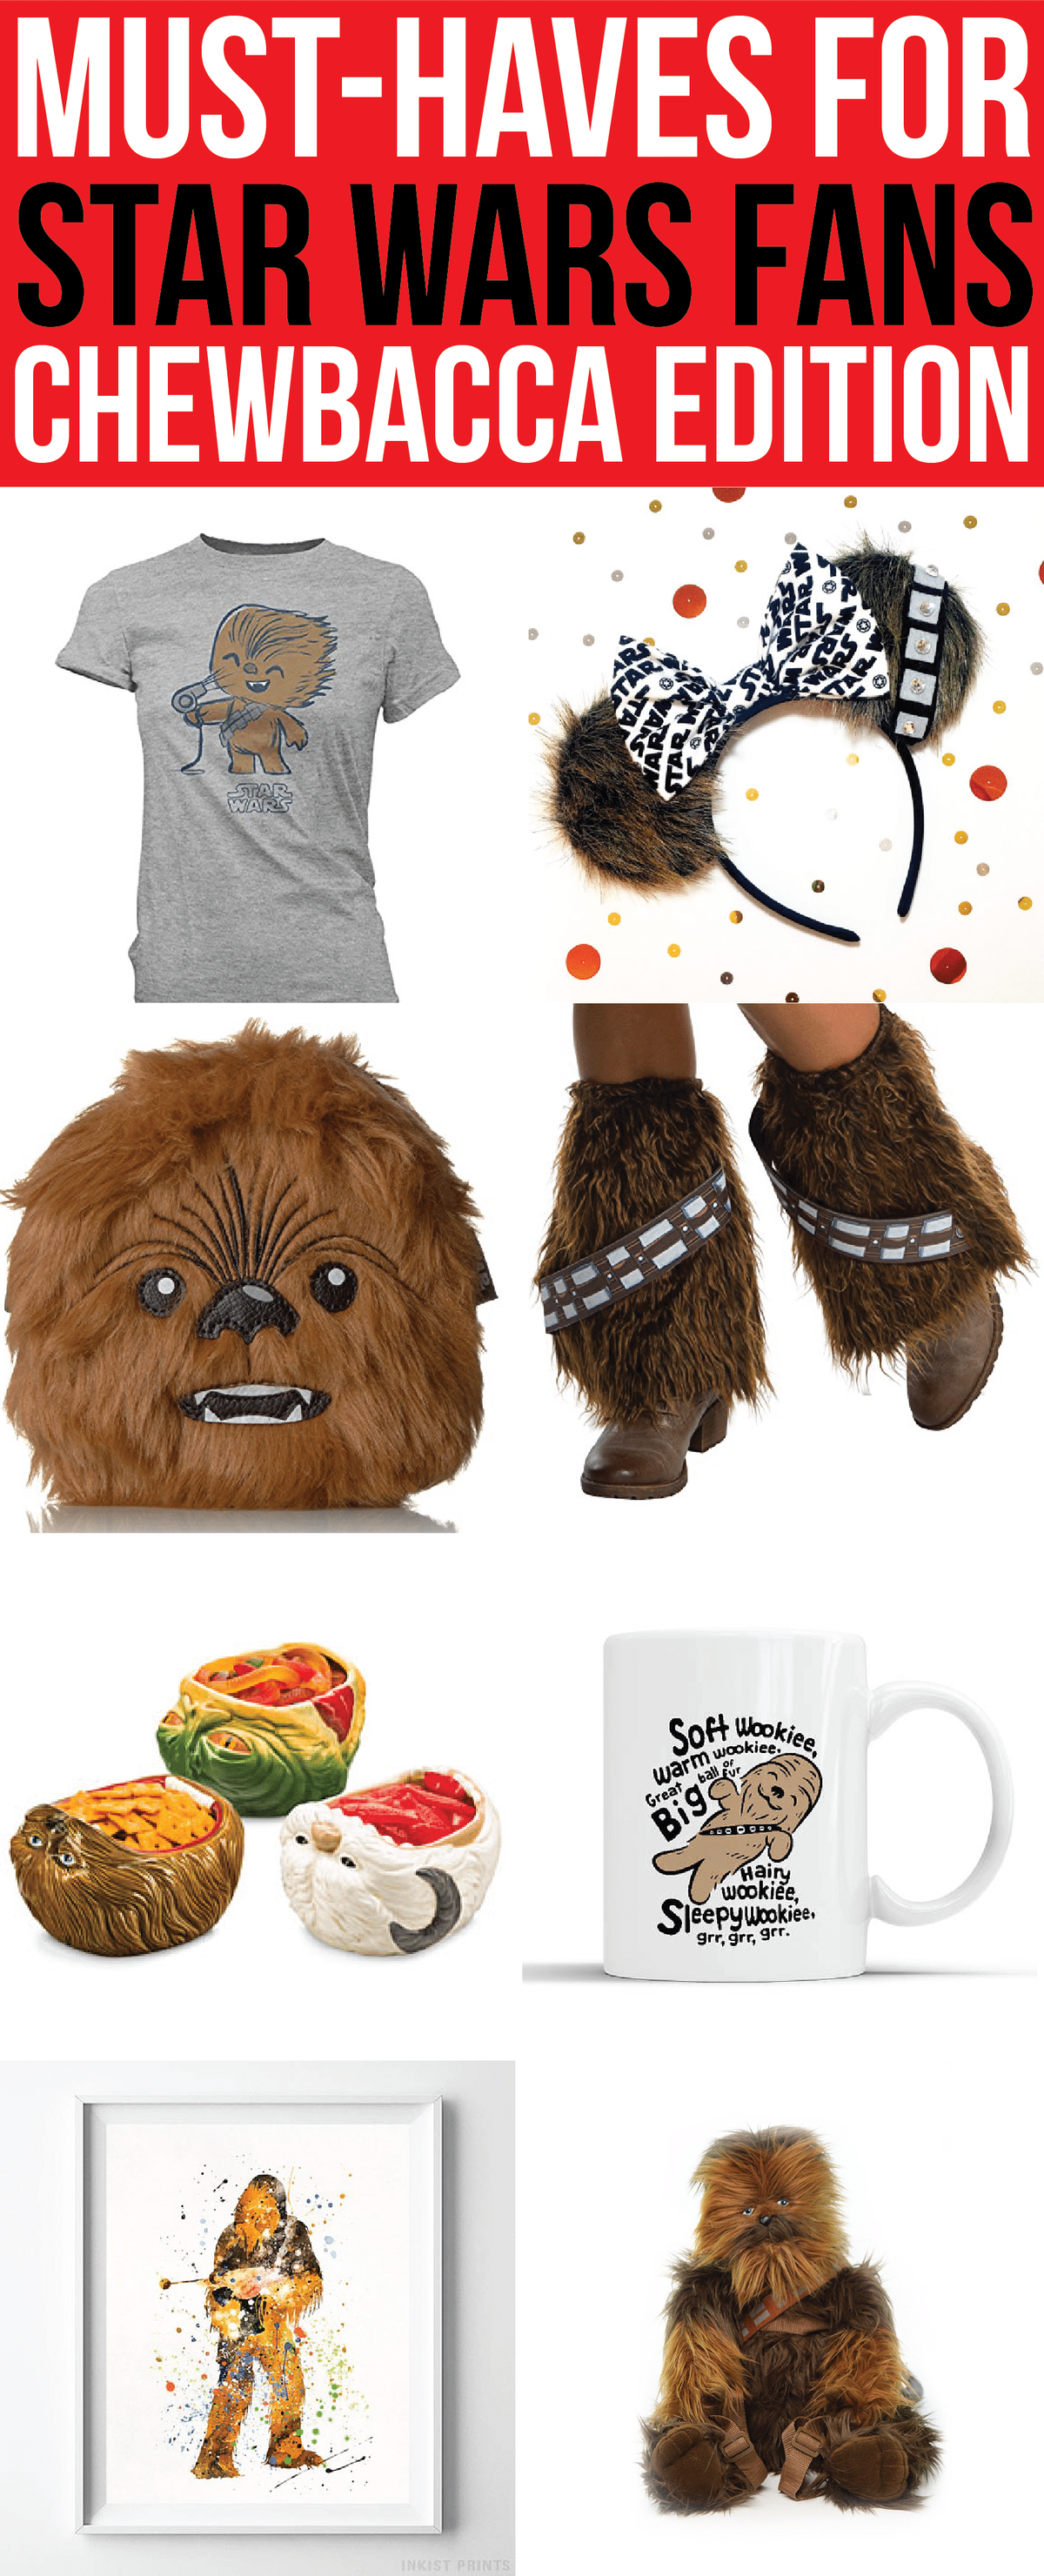 Χρειάζεστε δώρο Star Wars για να φέρετε σε πάρτι; Αυτά τα προϊόντα εμπνευσμένα από την Chewbacca είναι μερικά από τα καλύτερα δώρα γενεθλίων, ρούχα Star Wars ή πραγματικά απλά προϊόντα για άτομα που αγαπούσαν το The Last Jedi